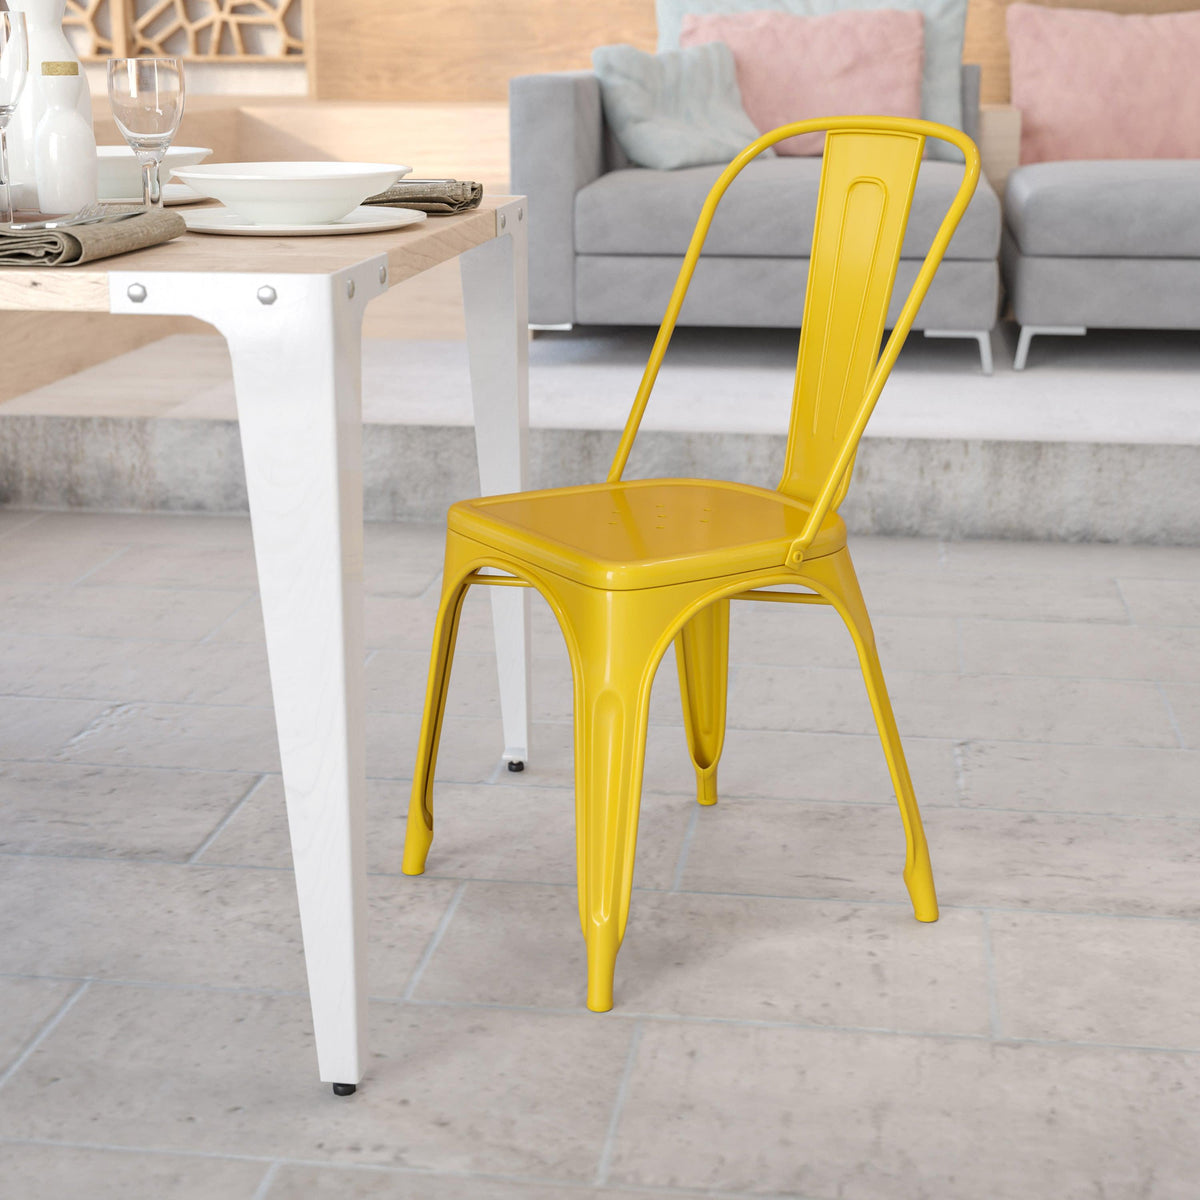 Yellow |#| Yellow Metal Indoor-Outdoor Stackable Chair - Restaurant Chair - Bistro Chair